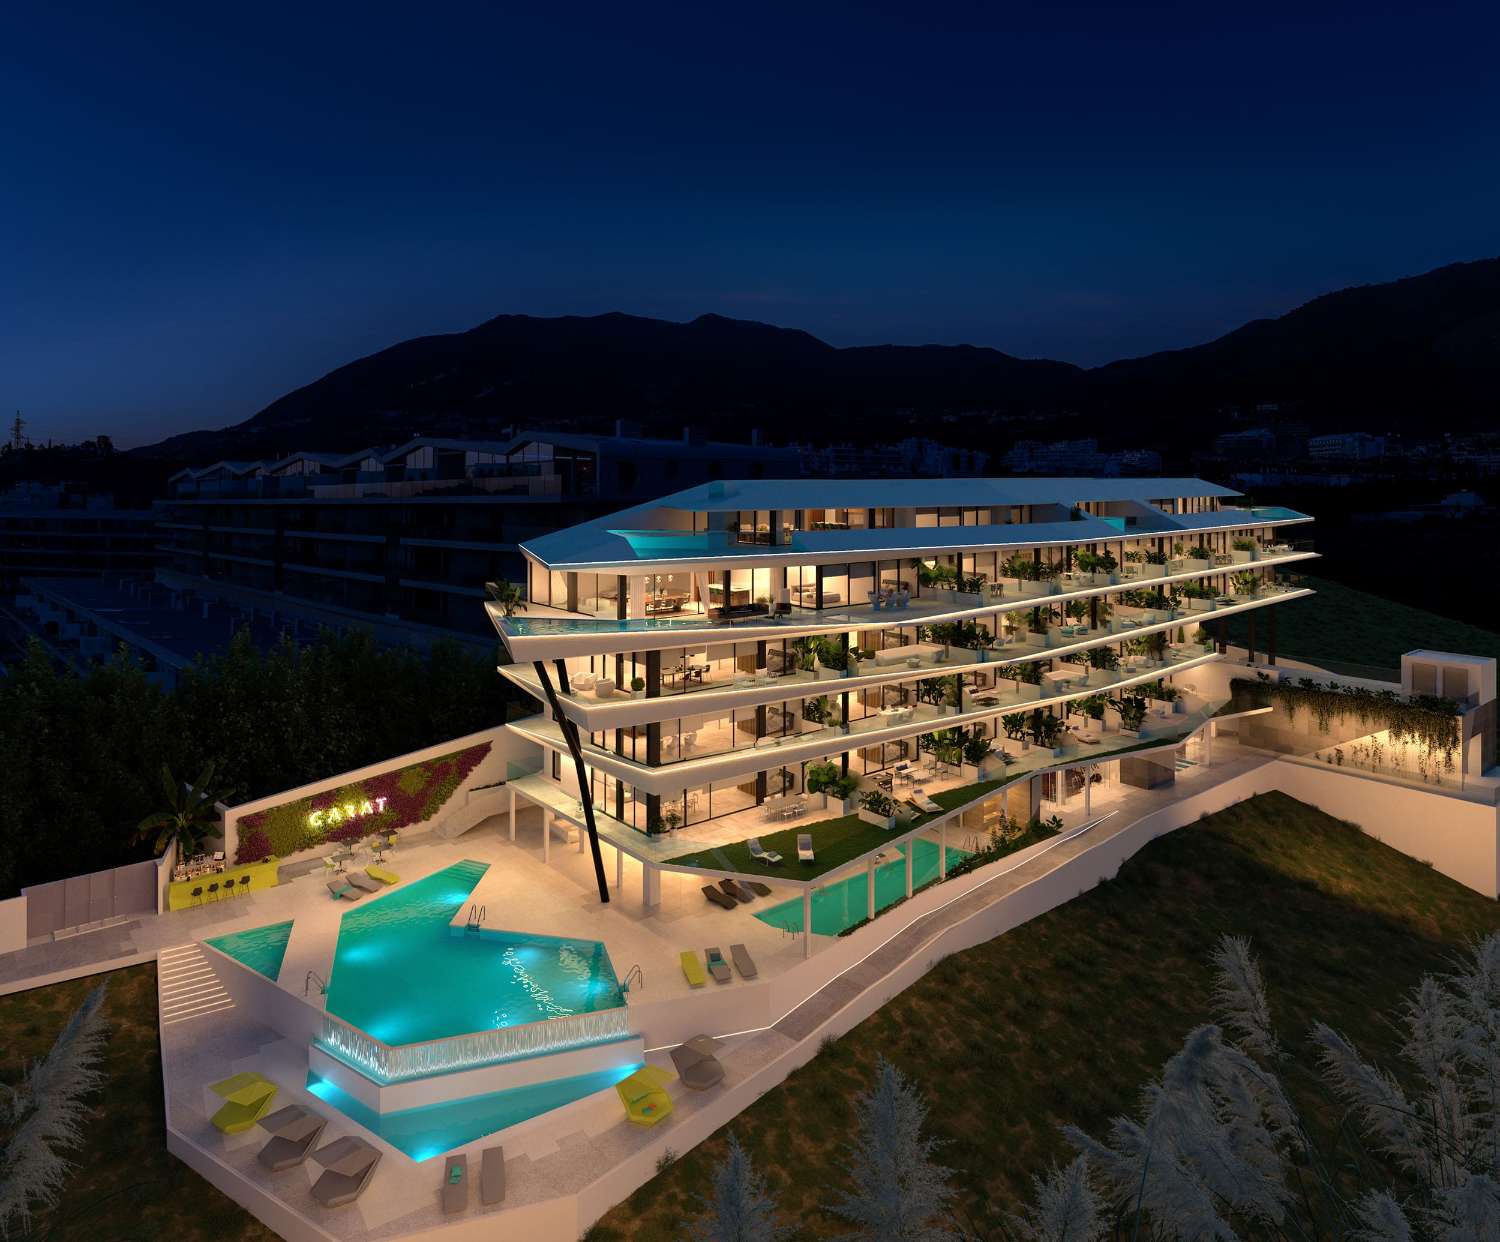 Se vende apartamentos OBRA NUEVA promotora en El Higuerón espectulares vistas al mar al lado de la playa